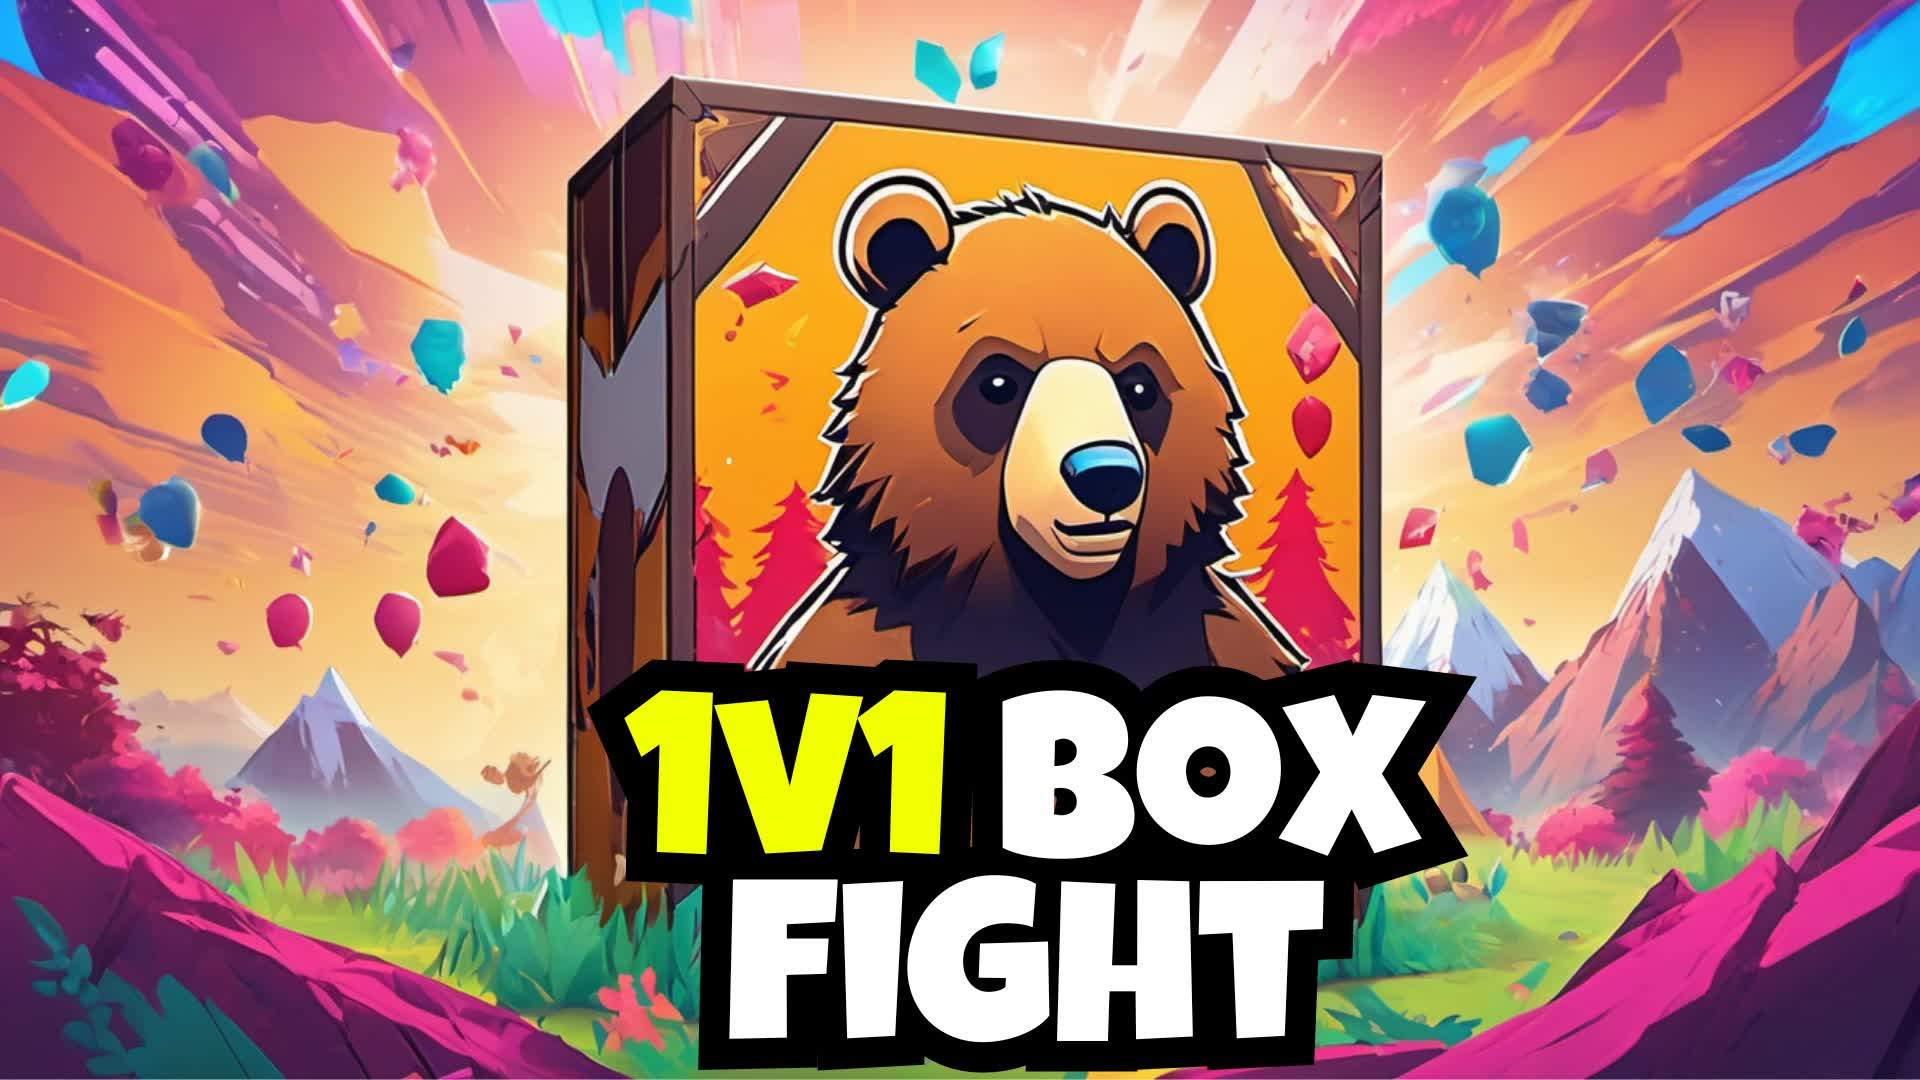 Teddy's 1v1 BOX FIGHT